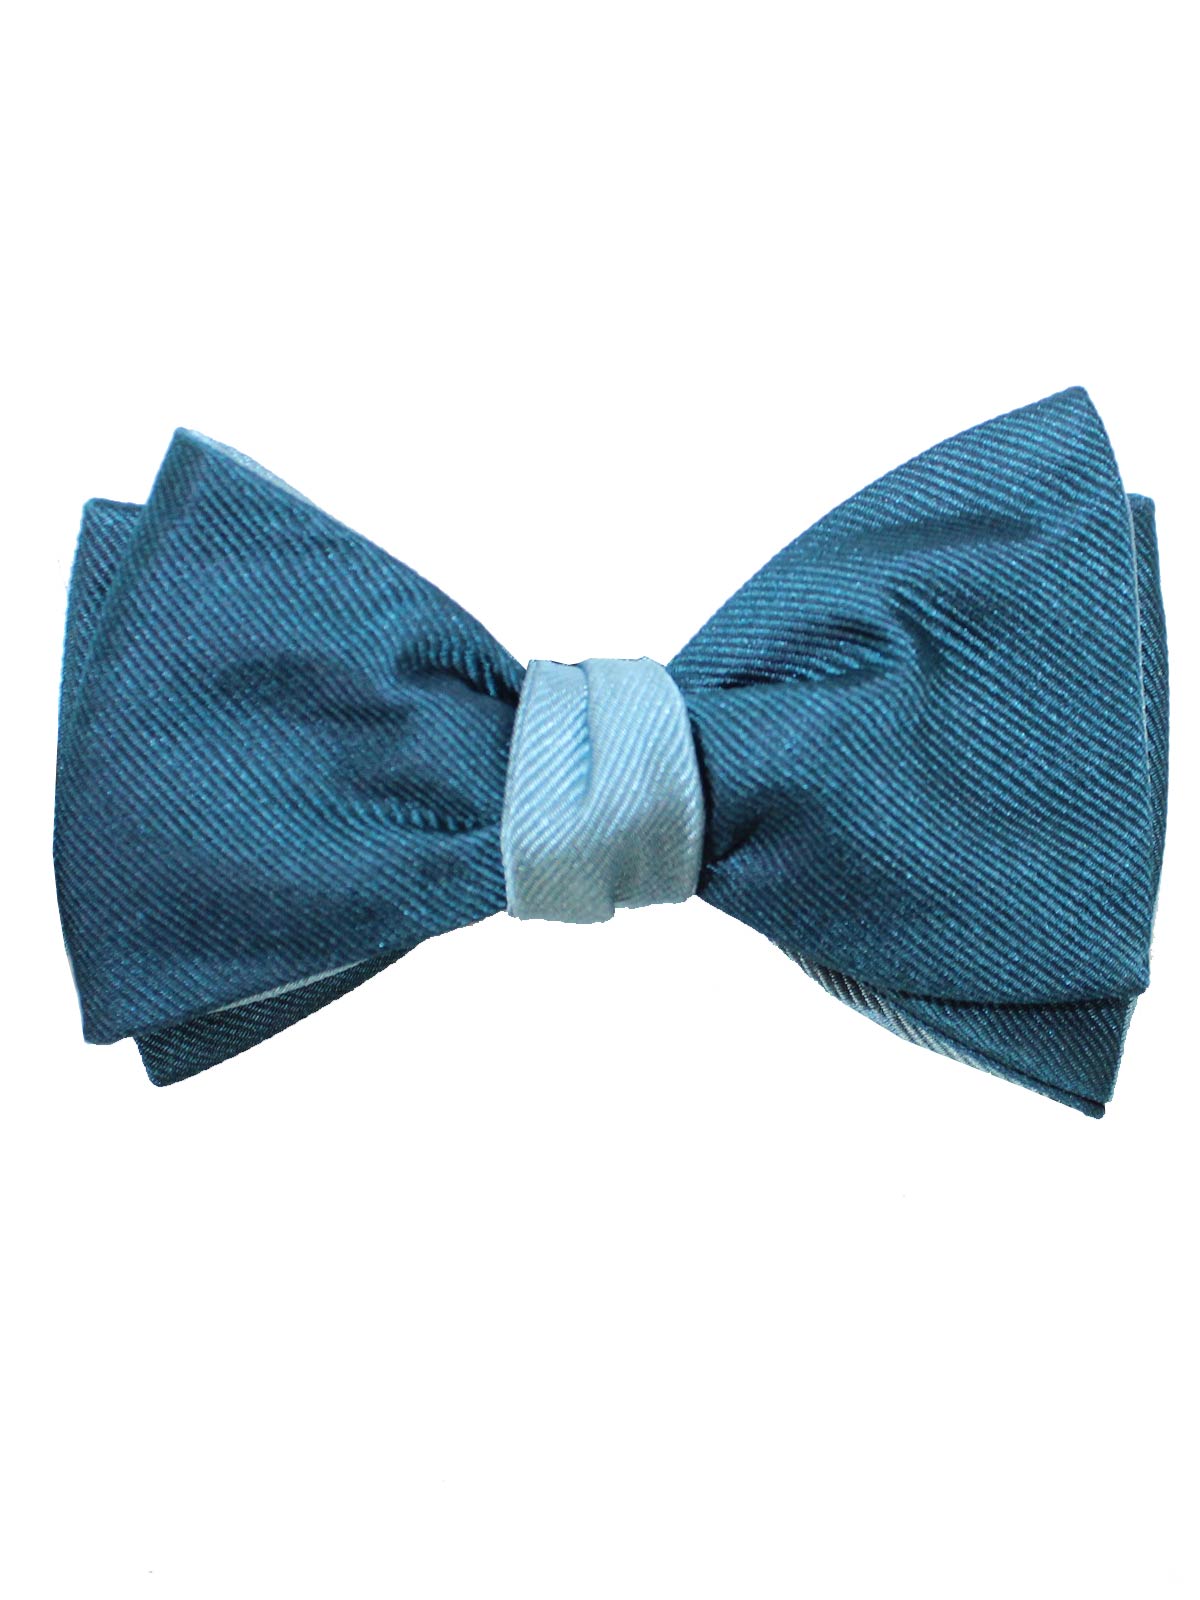 Gene Meyer Silk Bow Tie Blue Design - Self Tie